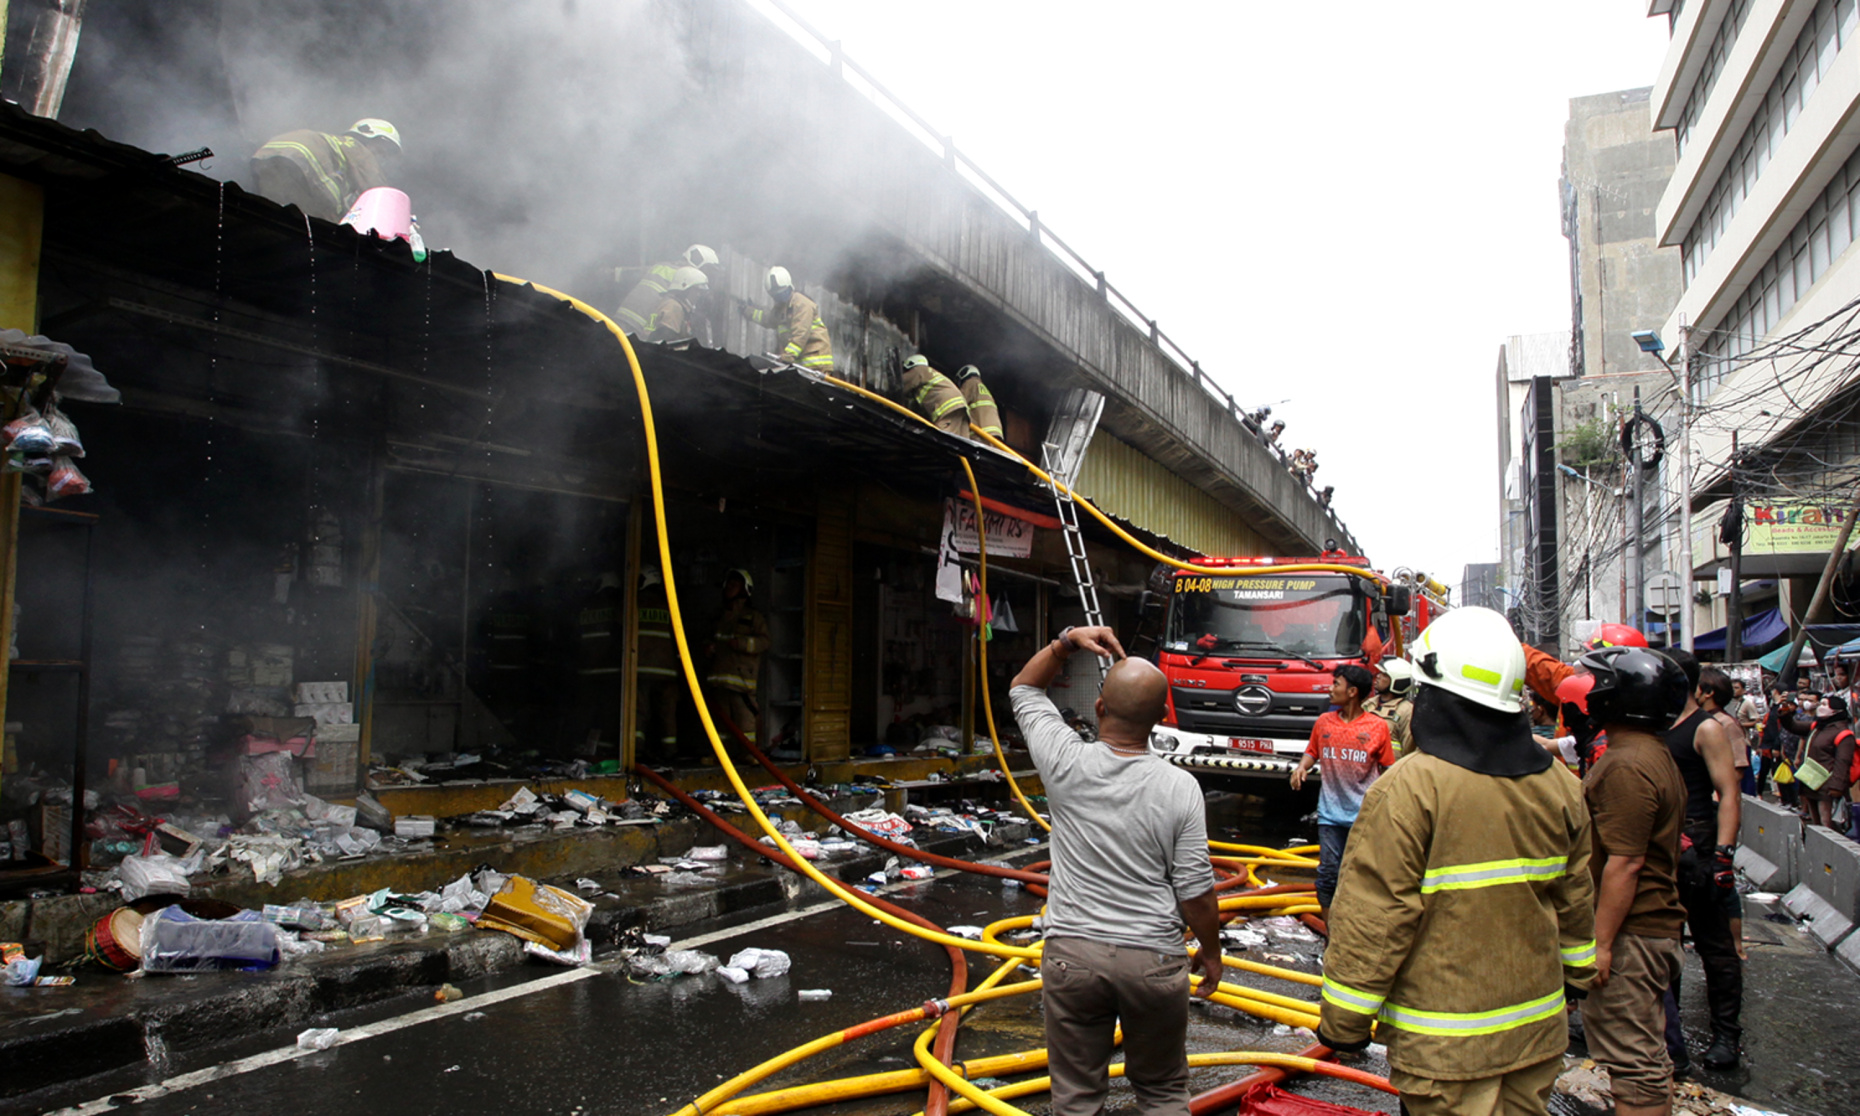 Kebakaran menghanguskan puluhan kios milik warga di pasar pagi esemka siang tadi (Ashar/SinPo.id)